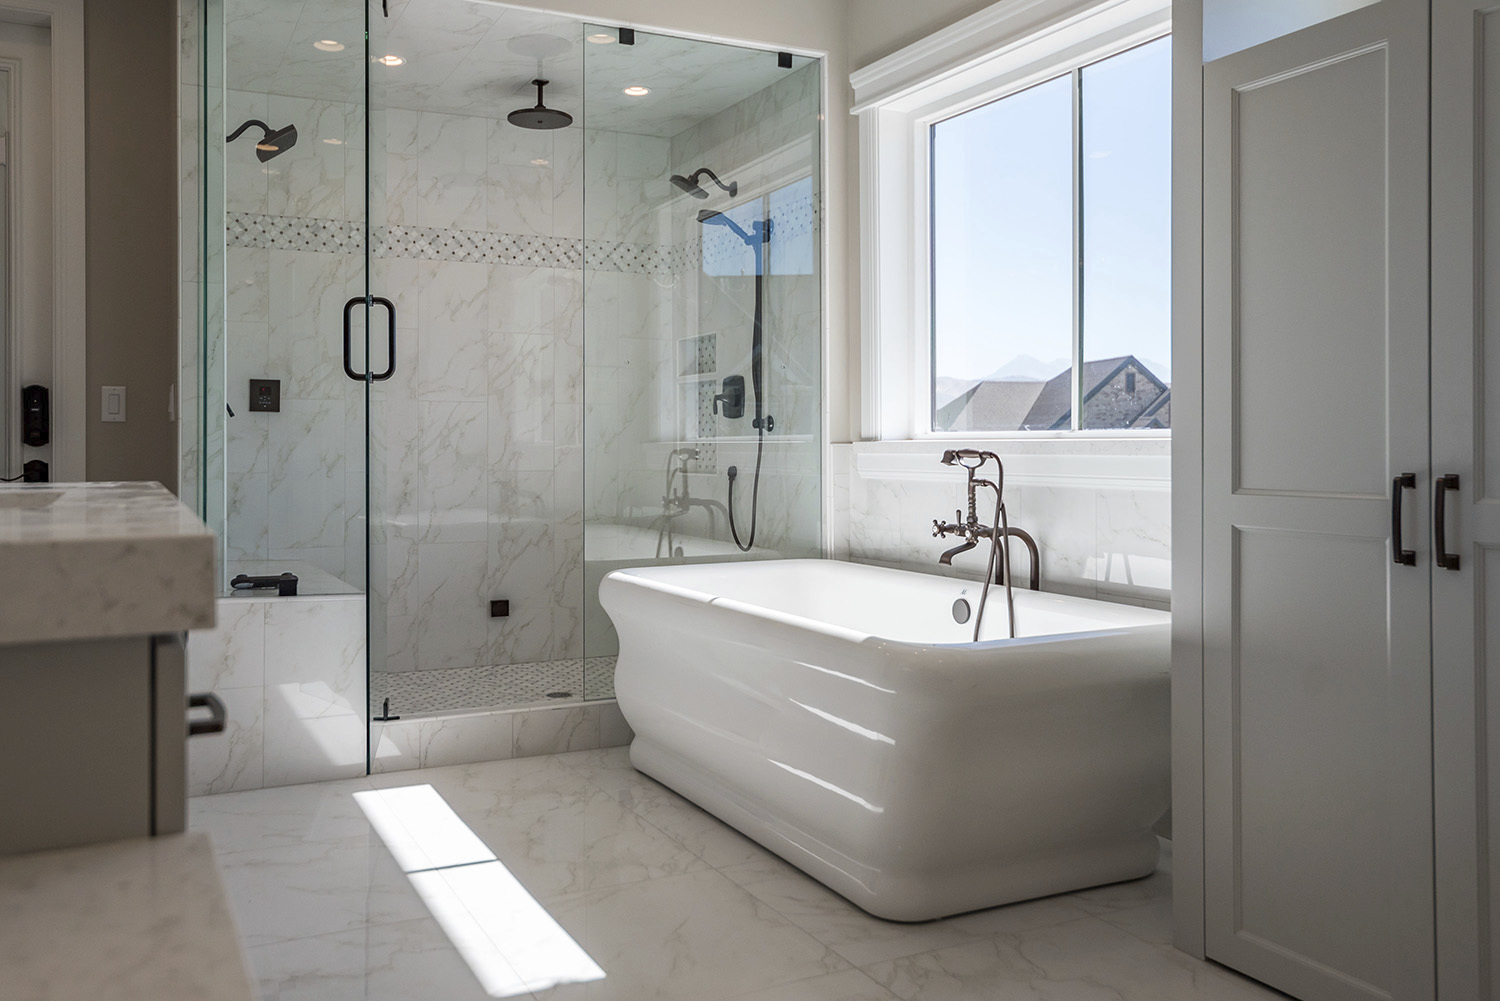 Custom bathroom with white marble tile rainfall shower and a destination bath tub